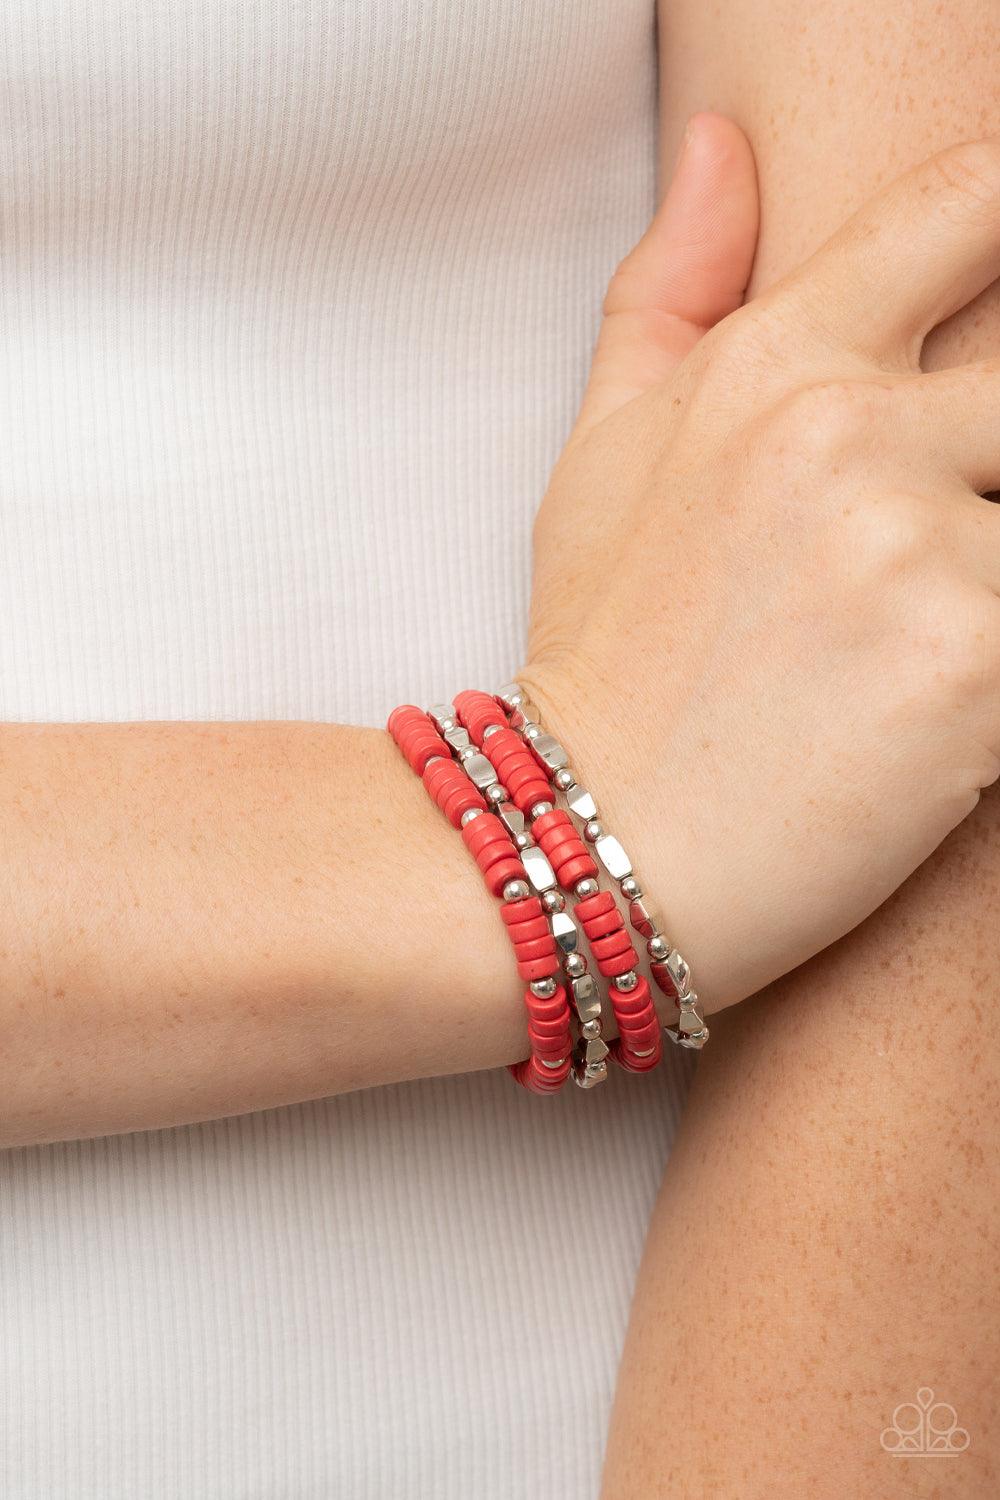 Anasazi Apothecary Red Bracelets - Jewelry by Bretta